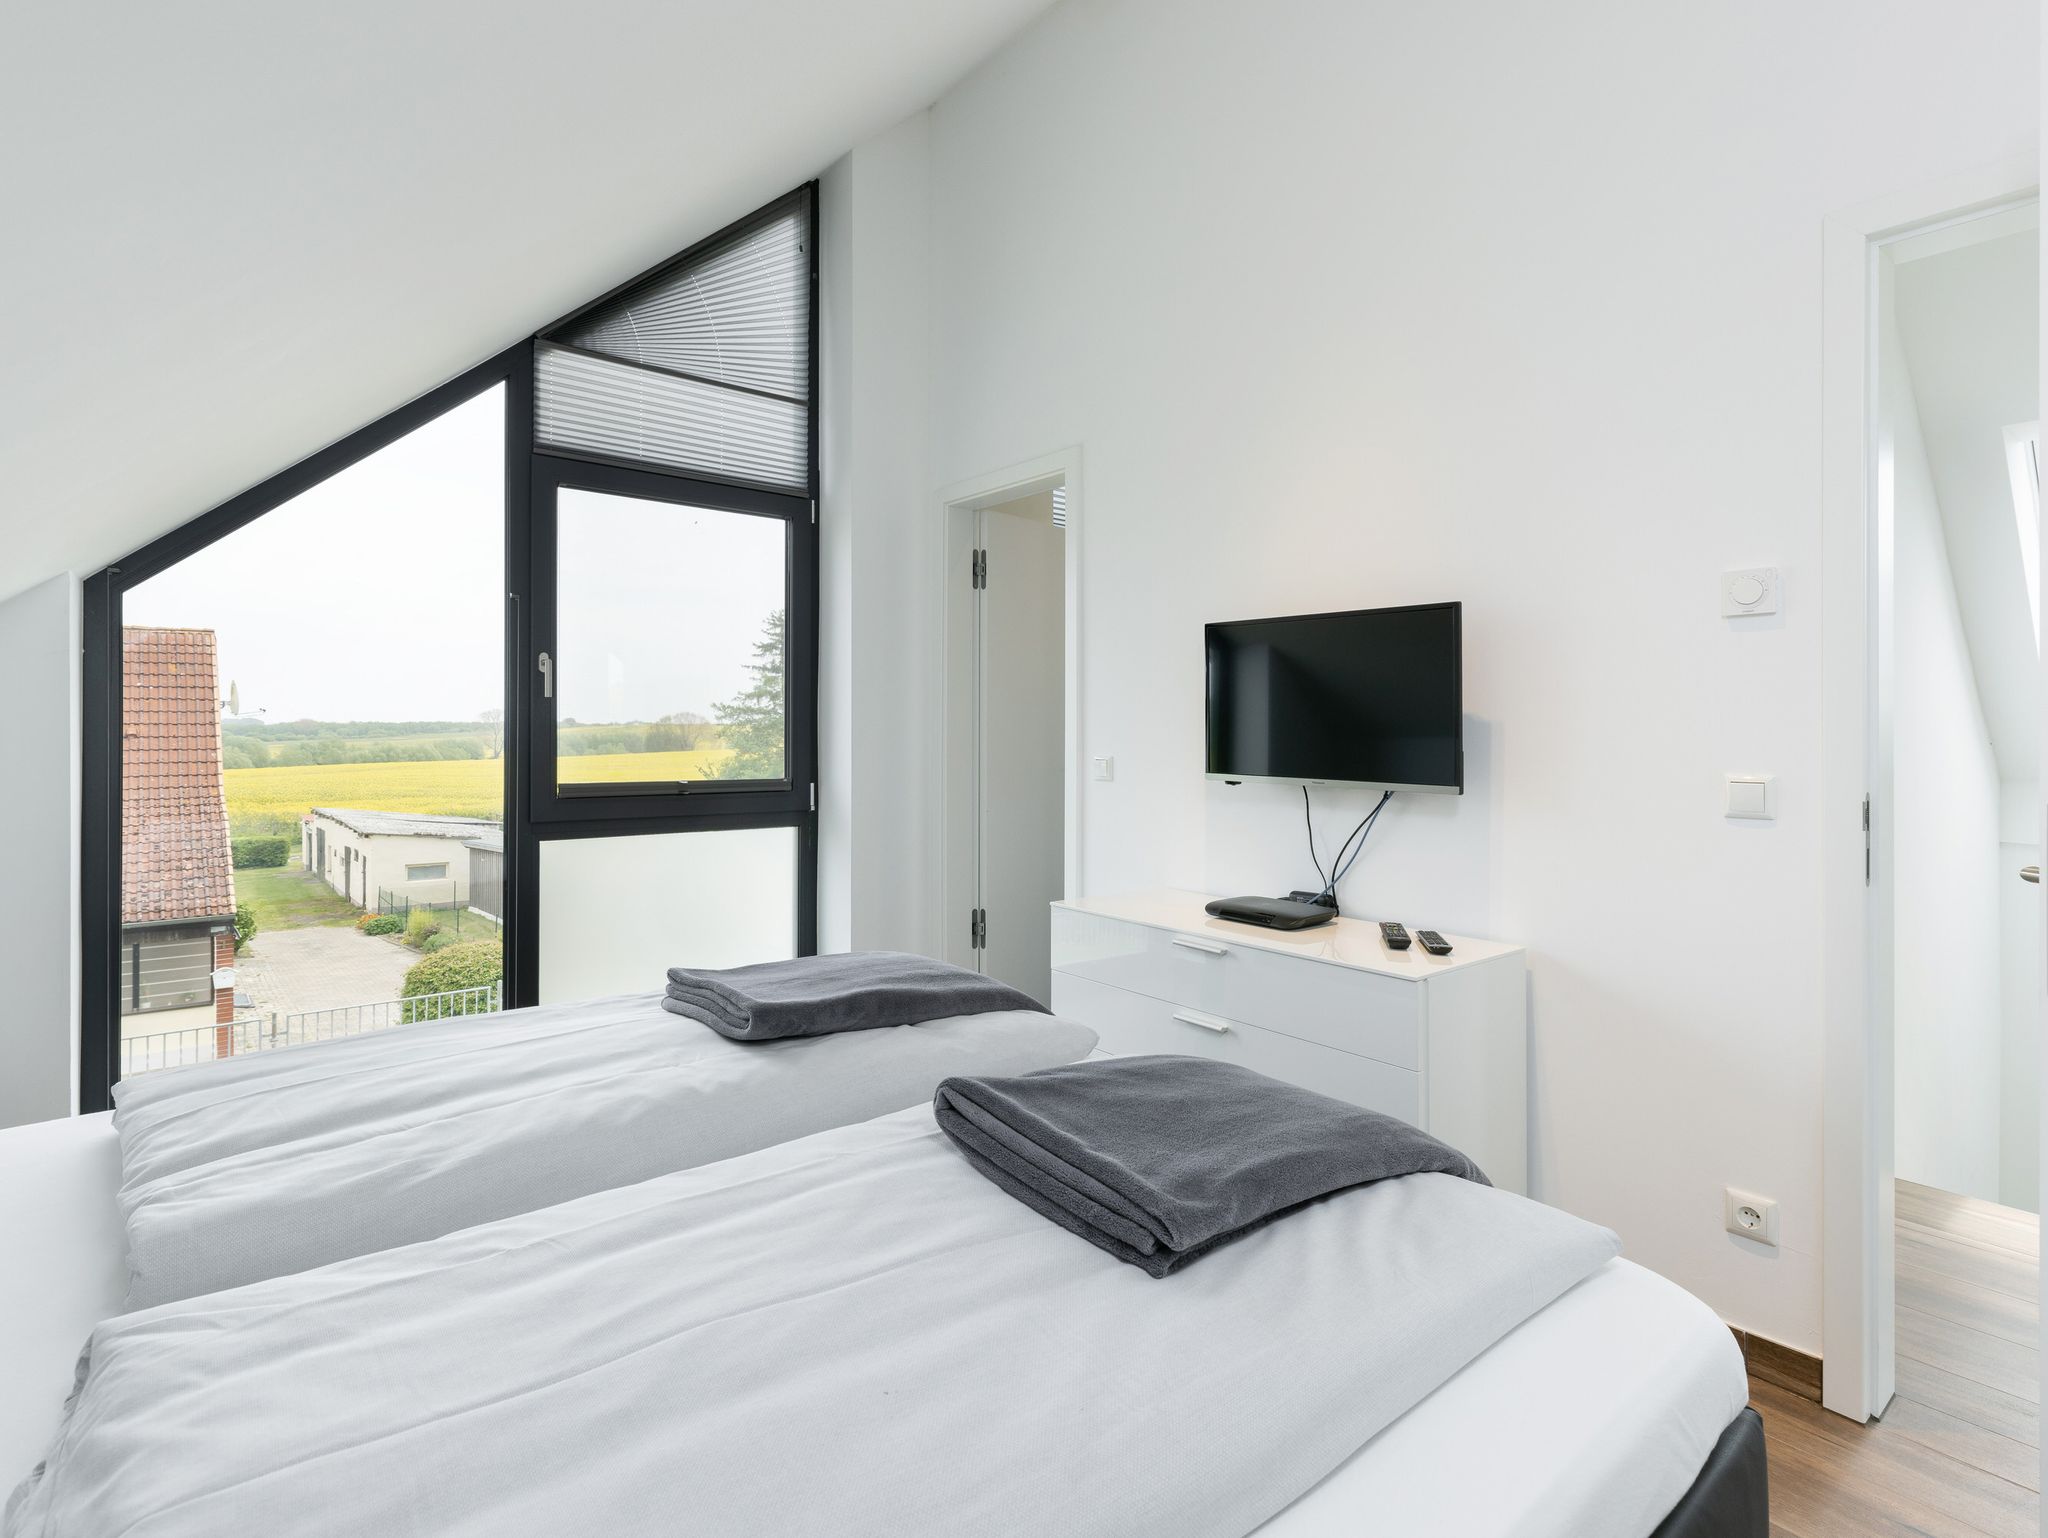 Baltic Hideaway Beach Hotel Warnemünde - Economy Double Room Erdgeschoss